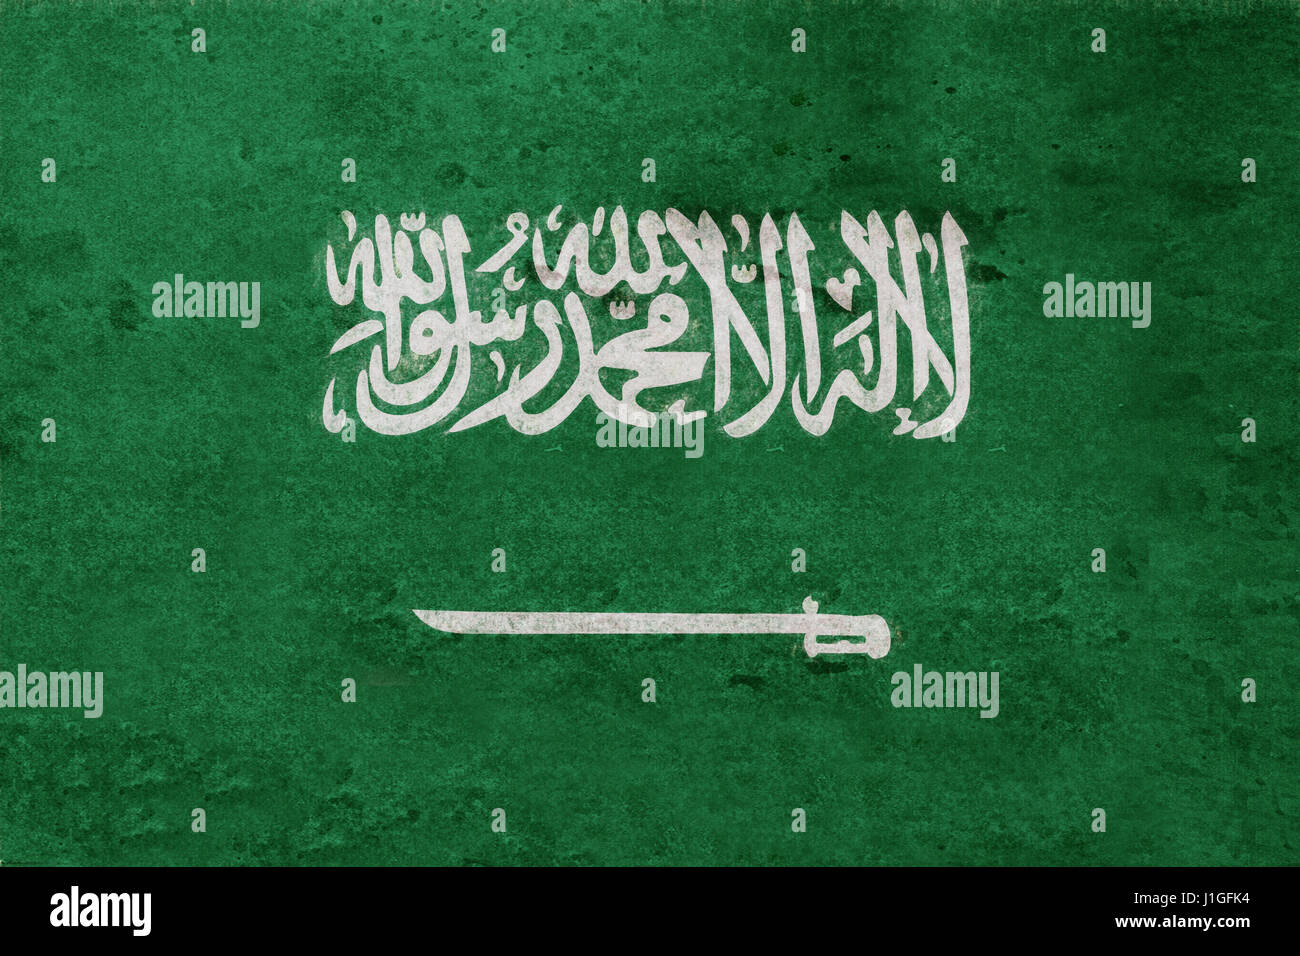 Ilustración de la bandera de Arabia Saudita con un look grunge. Foto de stock